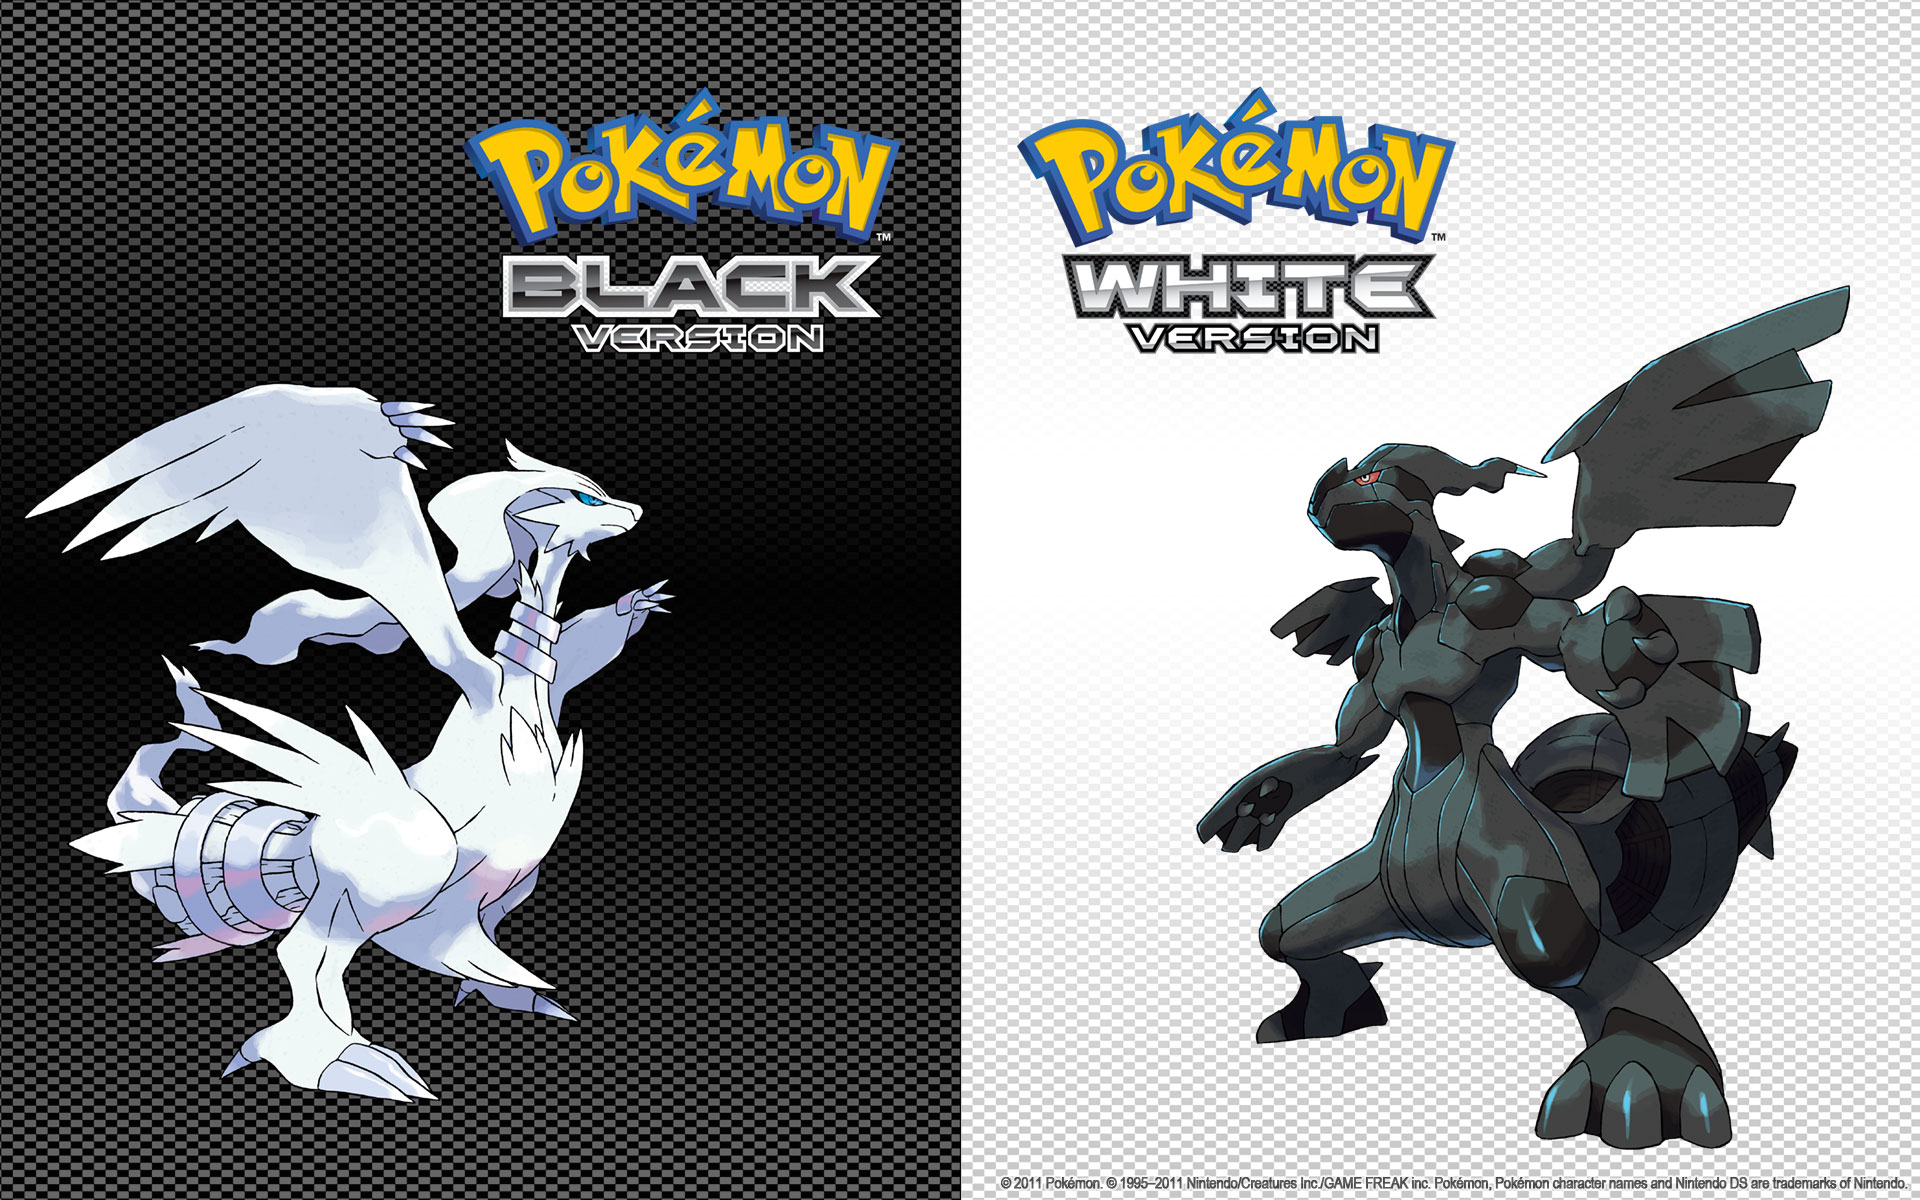 video game, pokemon: black and white, legendary pokémon, reshiram (pokémon), zekrom (pokemon), pokémon Full HD